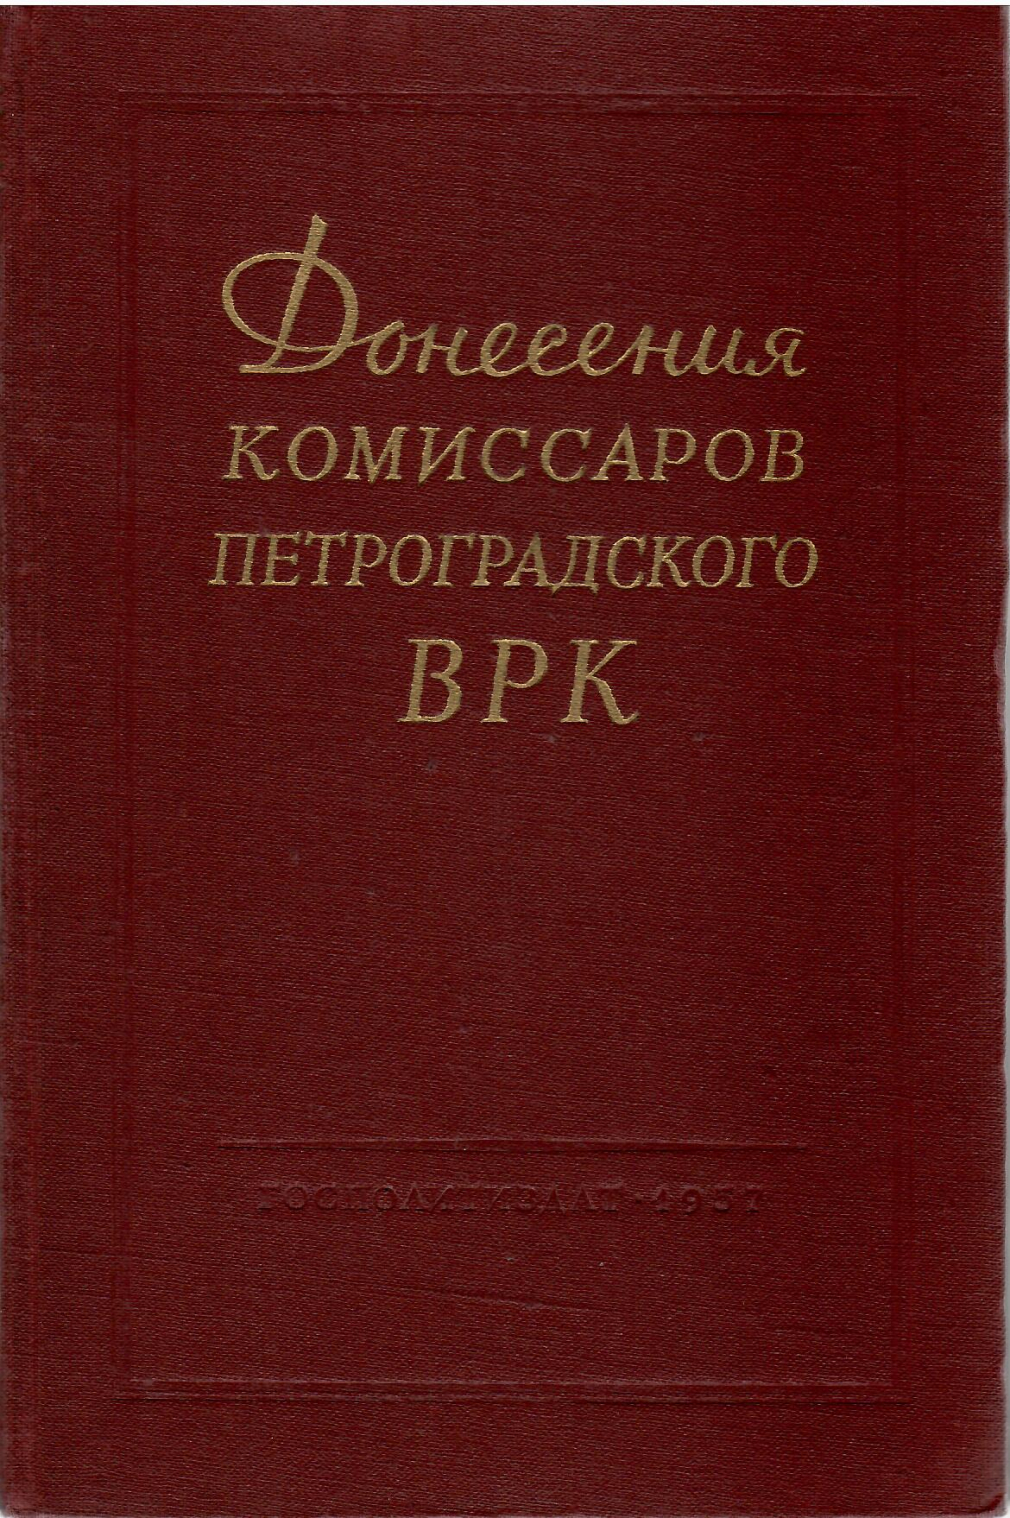 Донесение комиссаров петроградского ВРК. Москва, 1957 г. - фото - 1